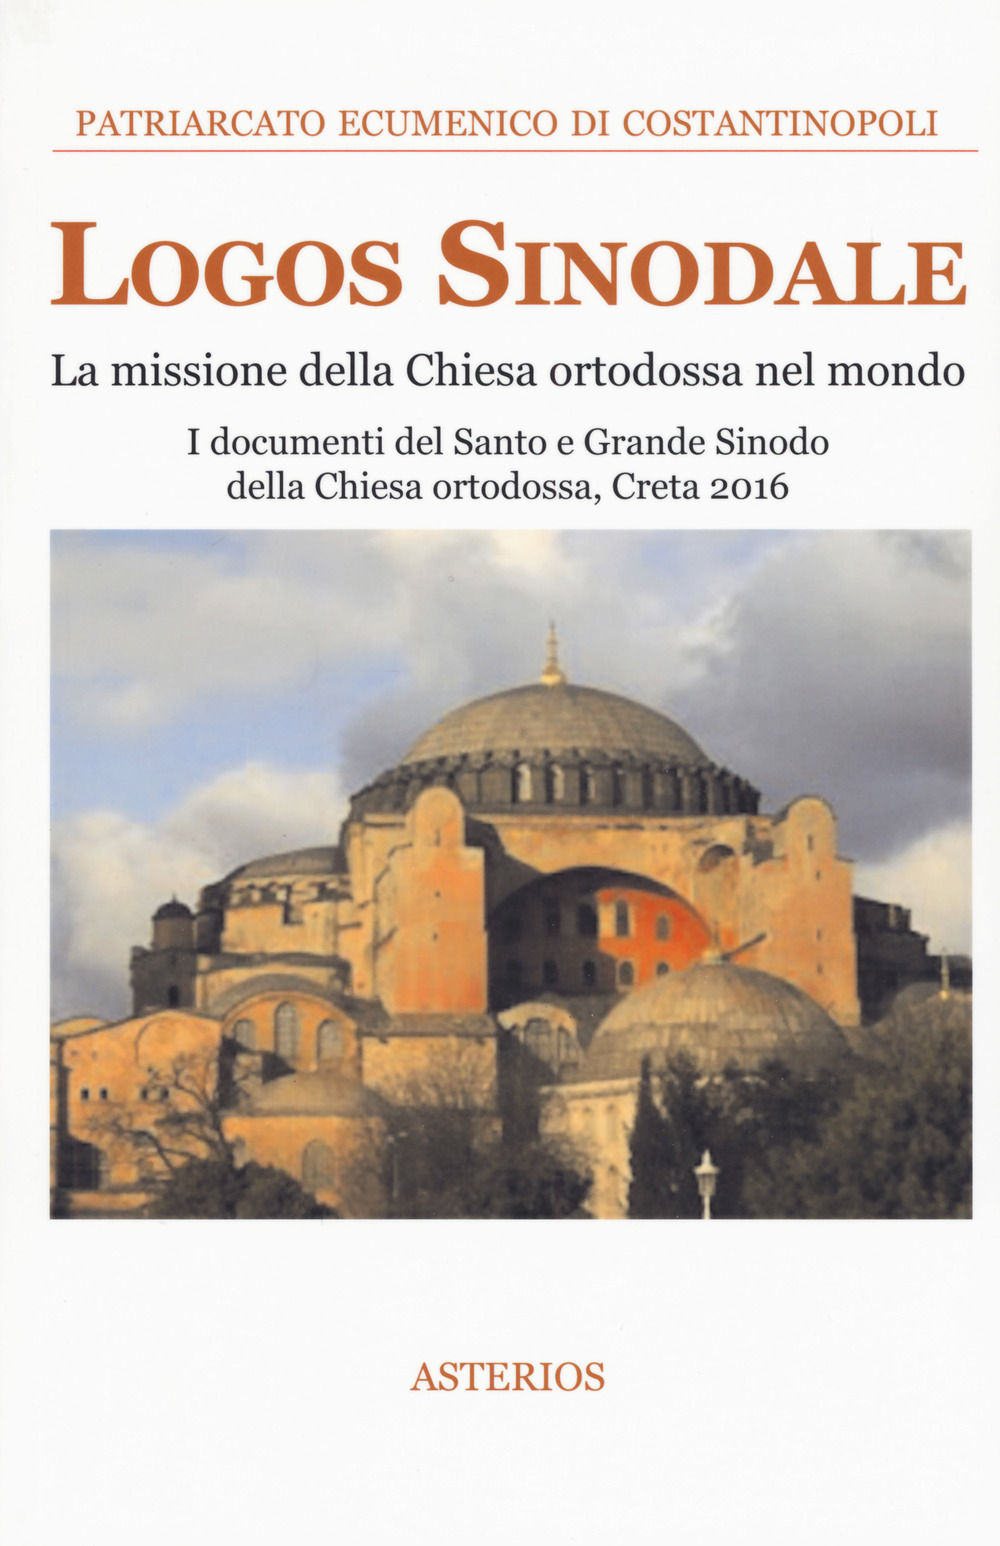 Image of Logos sinodale. La missione della Chiesa ortodossa nel mondo. I documenti del santo e grande sinodo della Chiesa ortodossa (Creta, 2016)